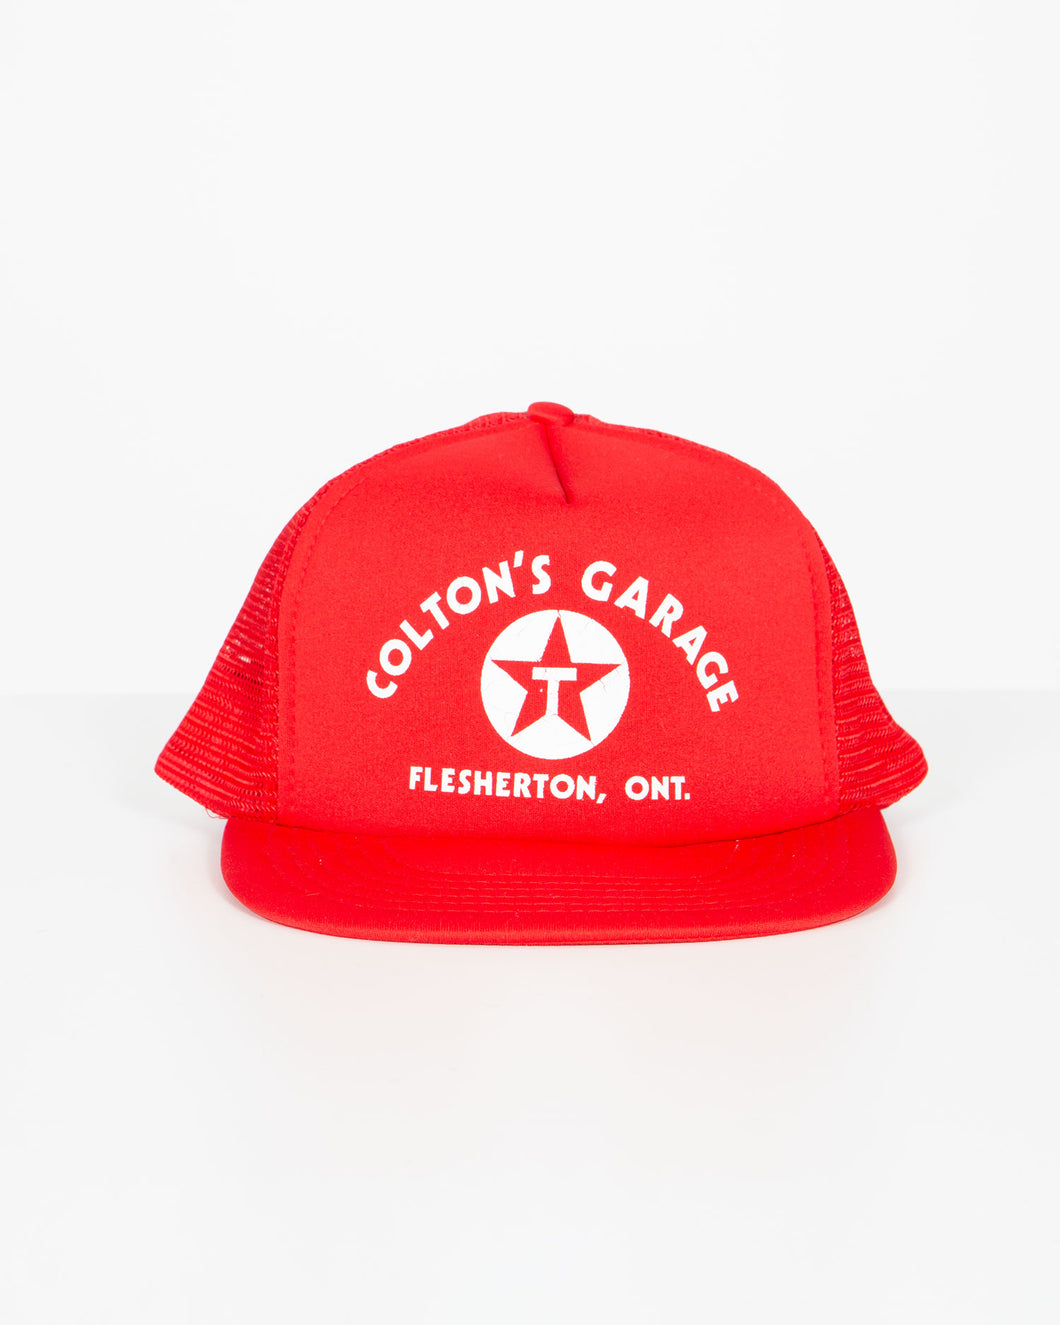 Colton's Garage Cap